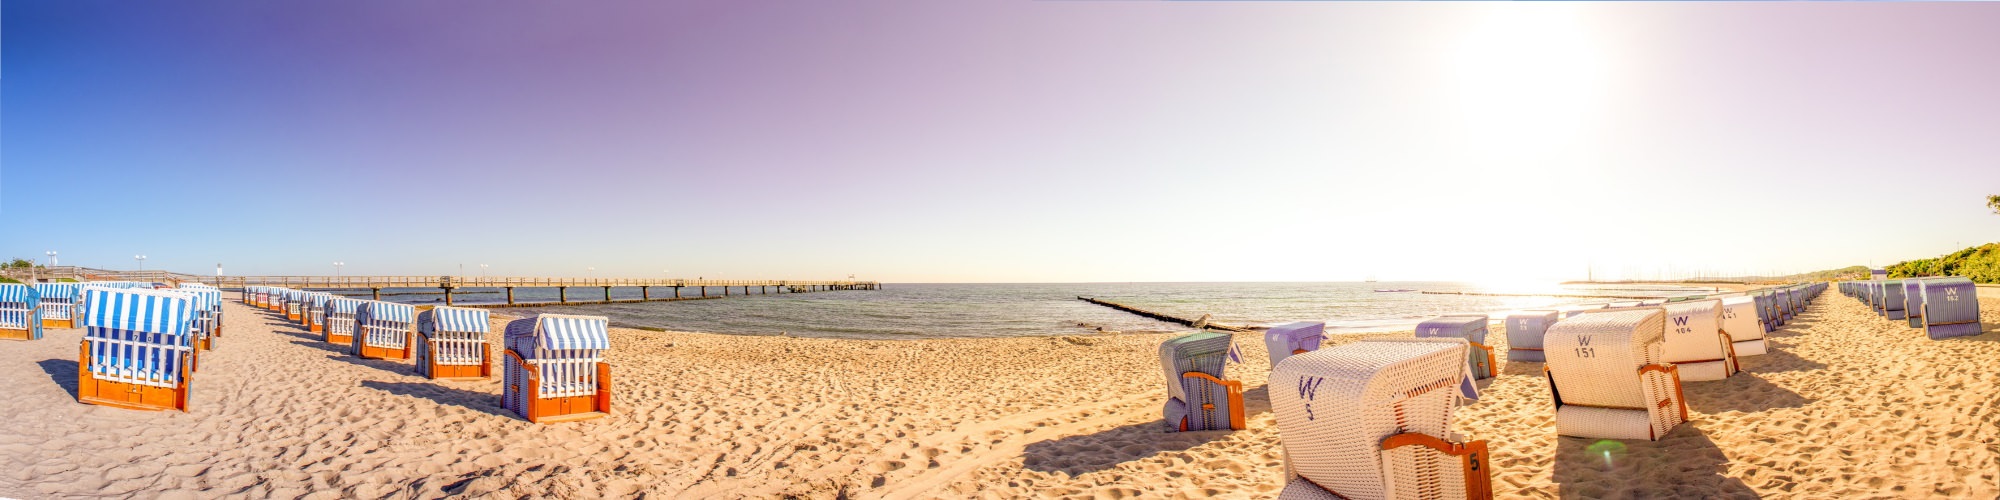 Panoramabild mit Strandkörben an der Ostsee